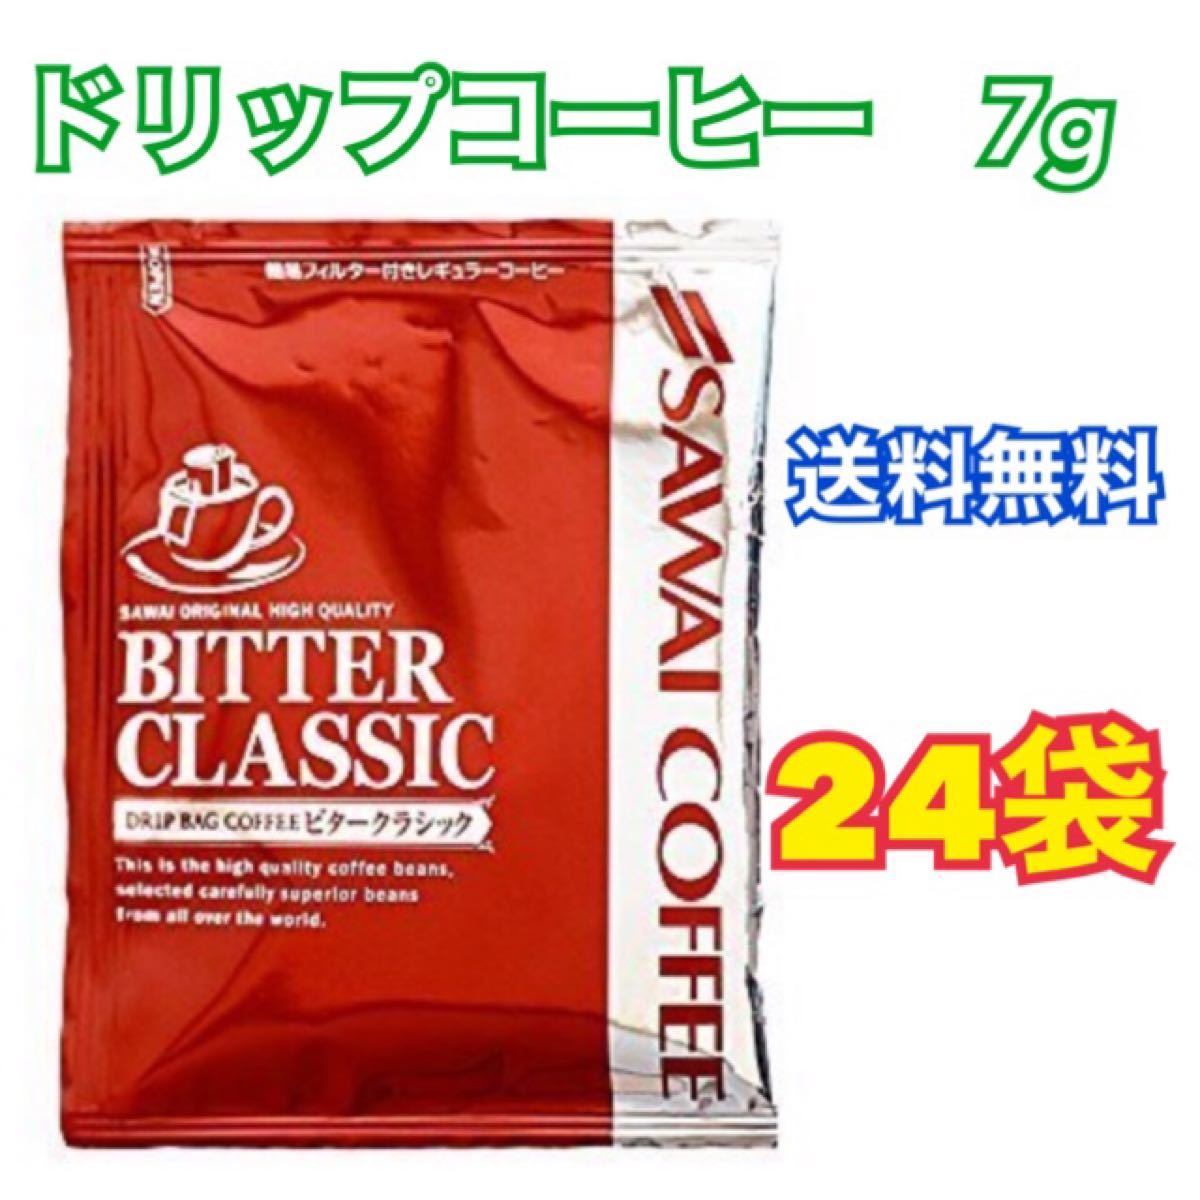 ドリップバッグコーヒー　(澤井珈琲) 7g x 24袋